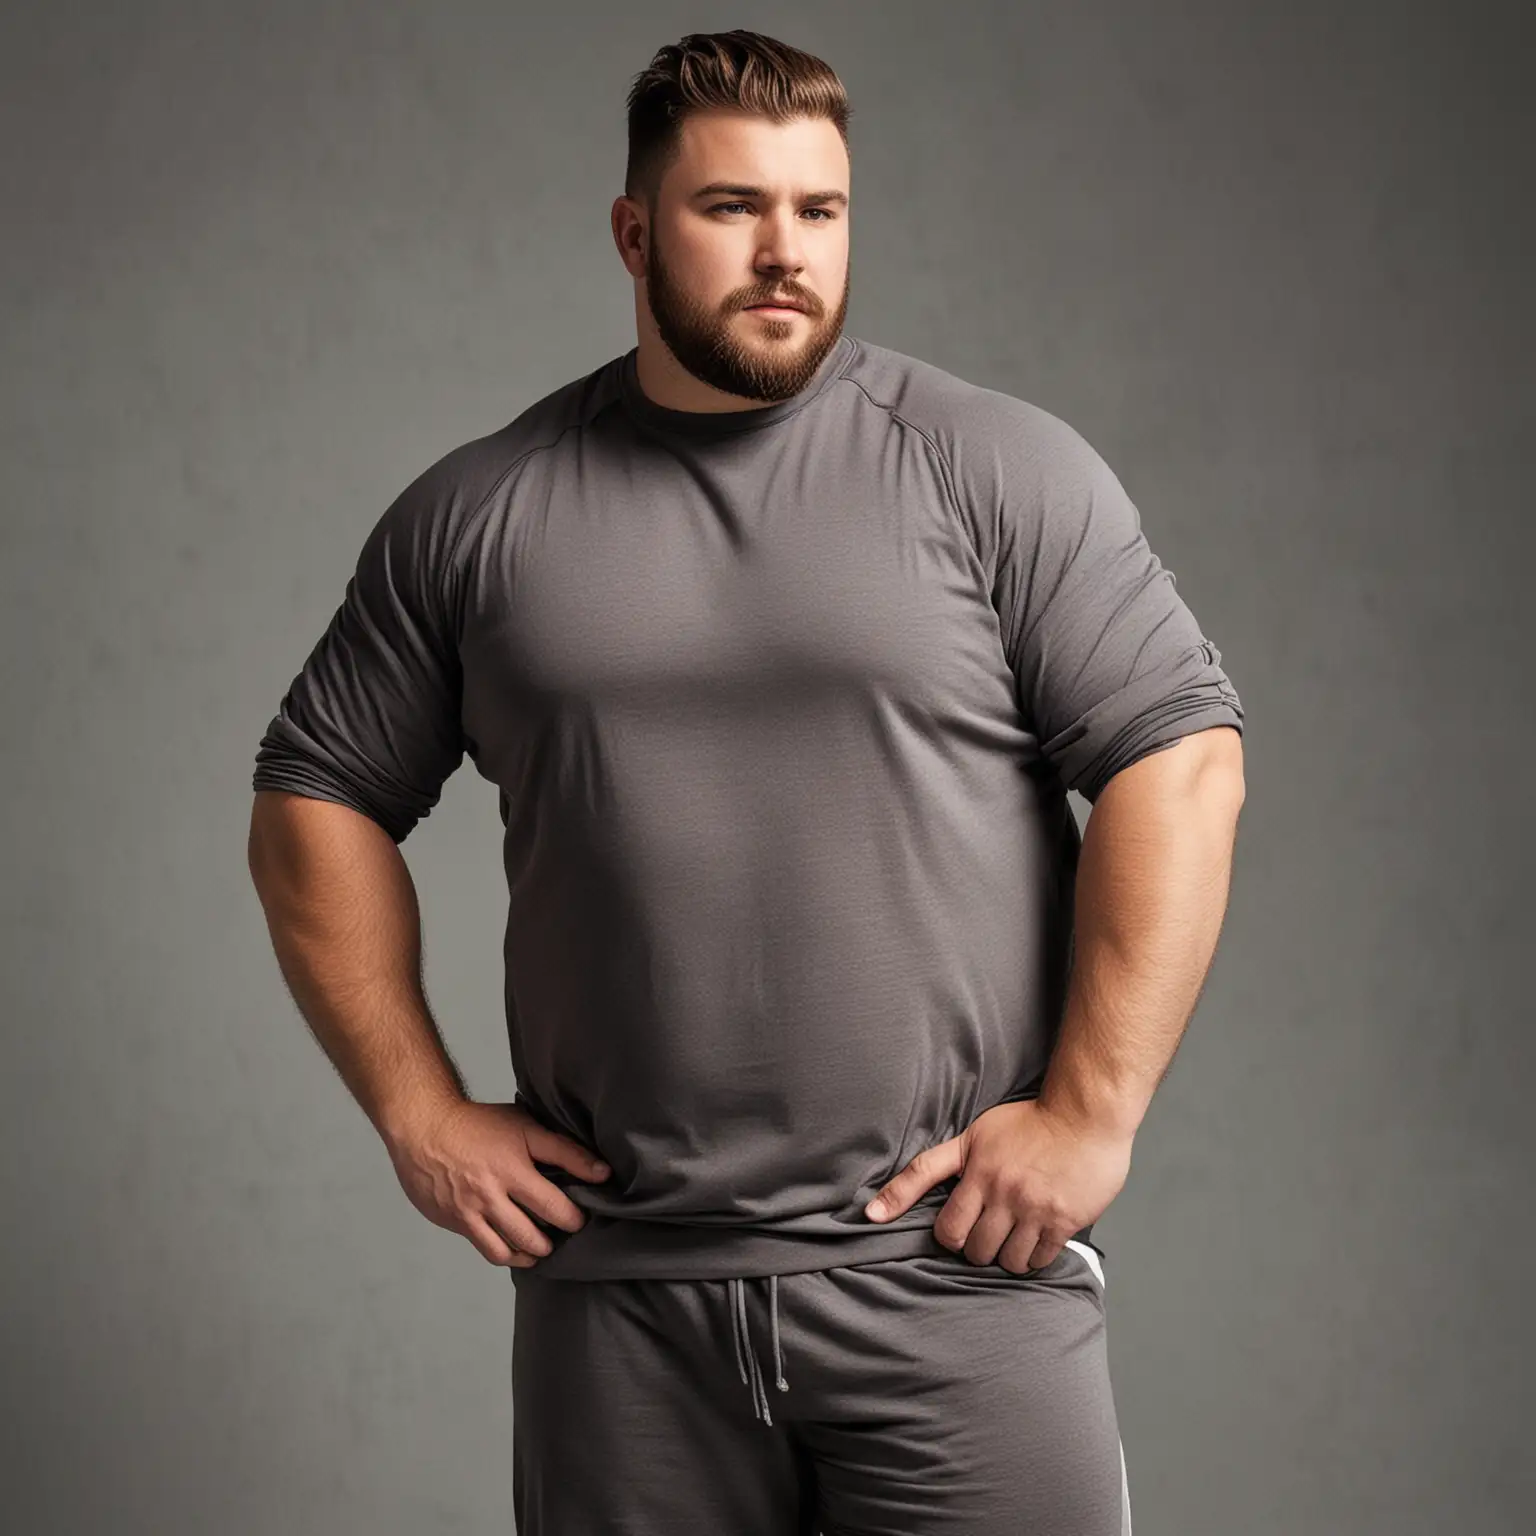 صورة لرجل واحد  سمين جدا   يمكنني من خلالها استخدام هذه الصورة لعرض ملابس الرجال ذوي المقاسات 
  الكبيرة في متجري. يرتدي ملابس رياضة